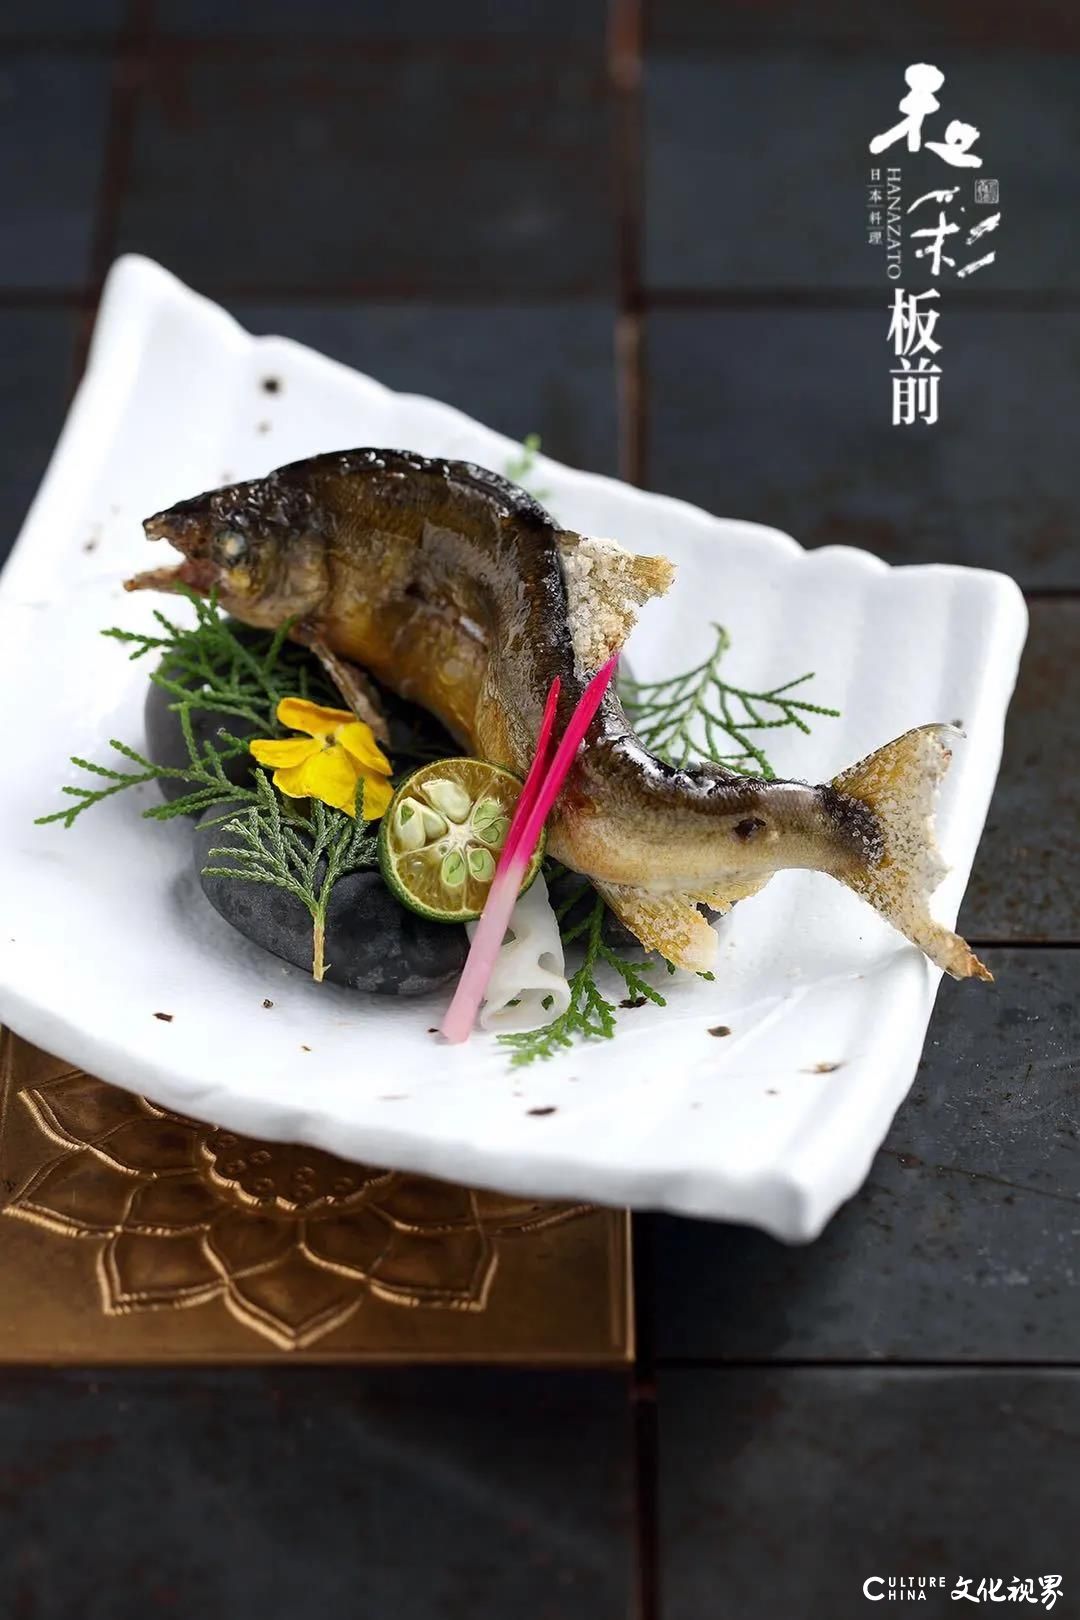 “蚝”门贵族“吉娜朵”+烤鮎鱼＆烤活鳗+阿拉斯加帝王蟹——这个秋季，济南和彩板前料理给你最好的食材滋补，最佳的浪漫体验